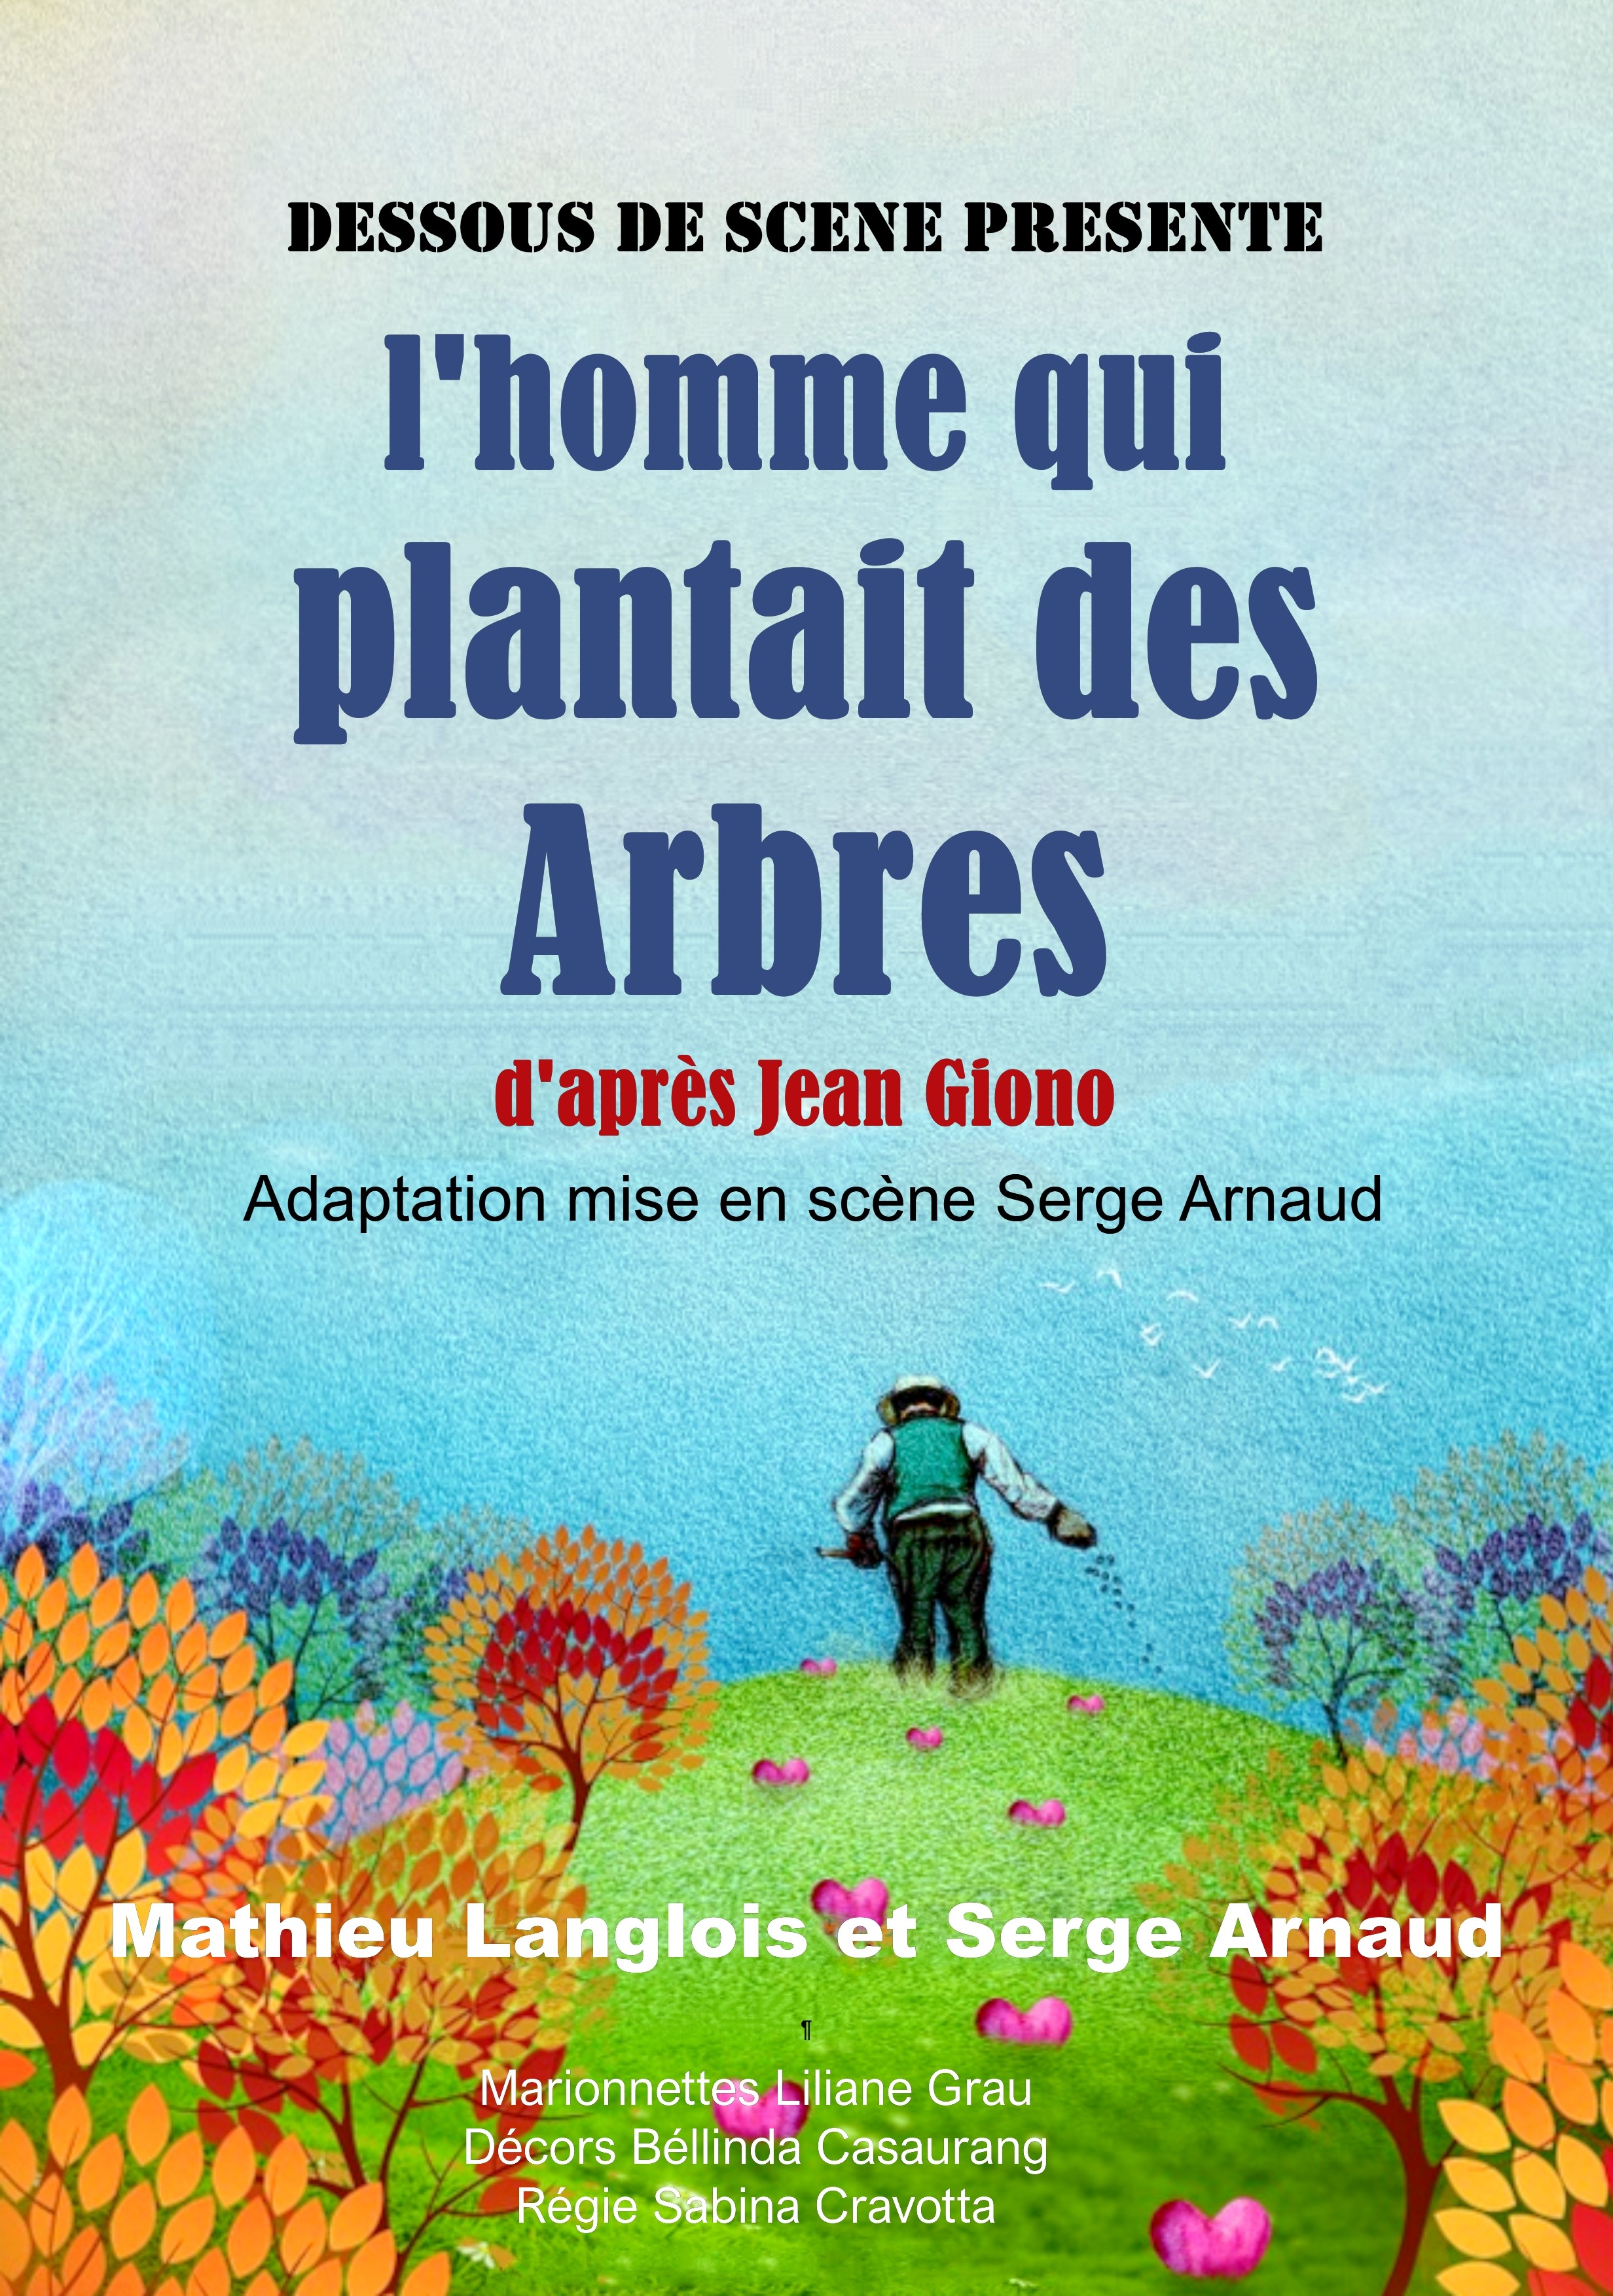 L'Homme qui plantait des arbres - Mon cinéma québécois en France